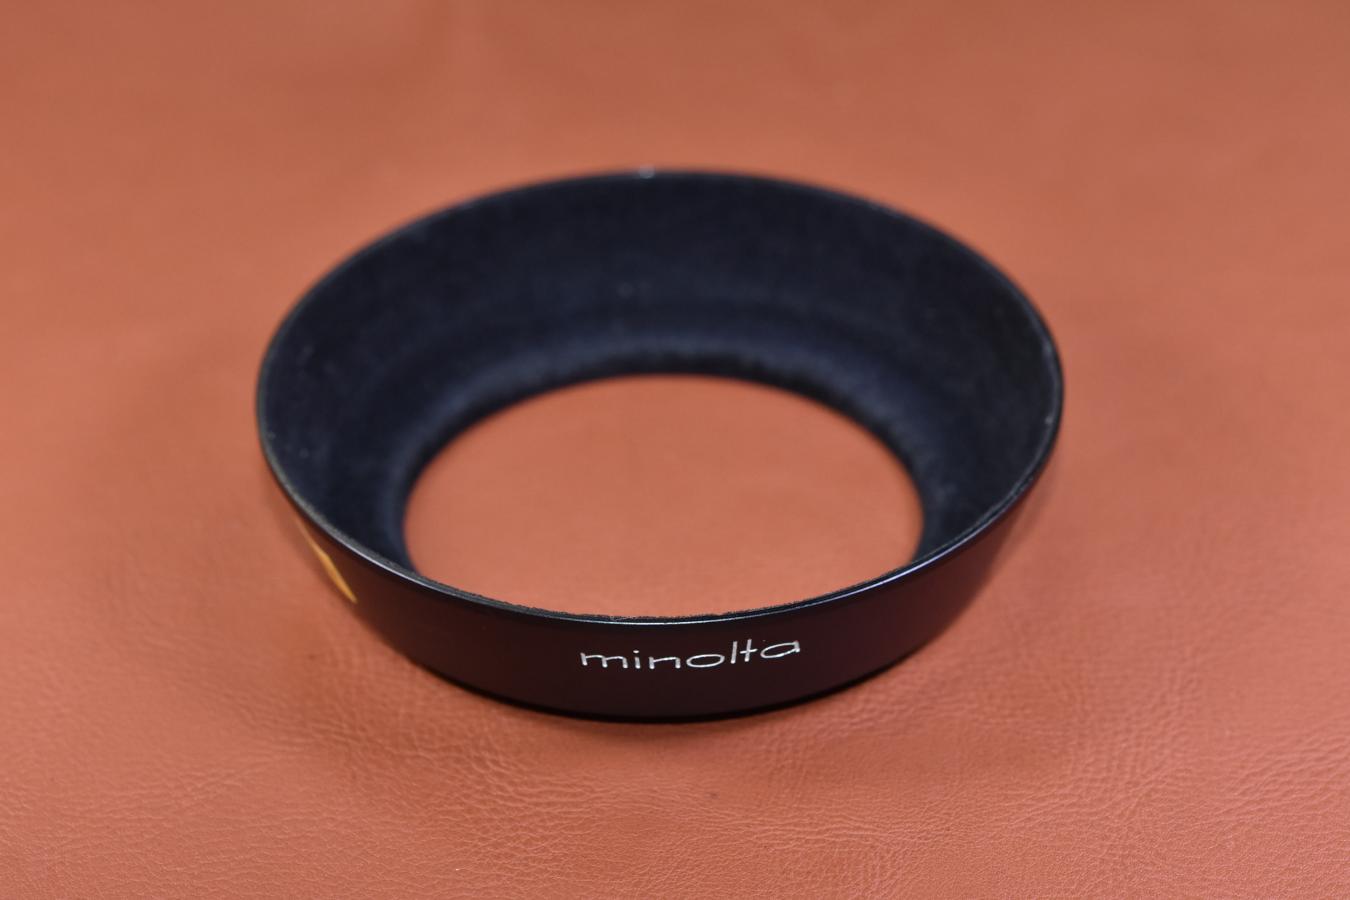 【絶版アクセサリー】minolta MC 28mm F2.8用METAL HOOD